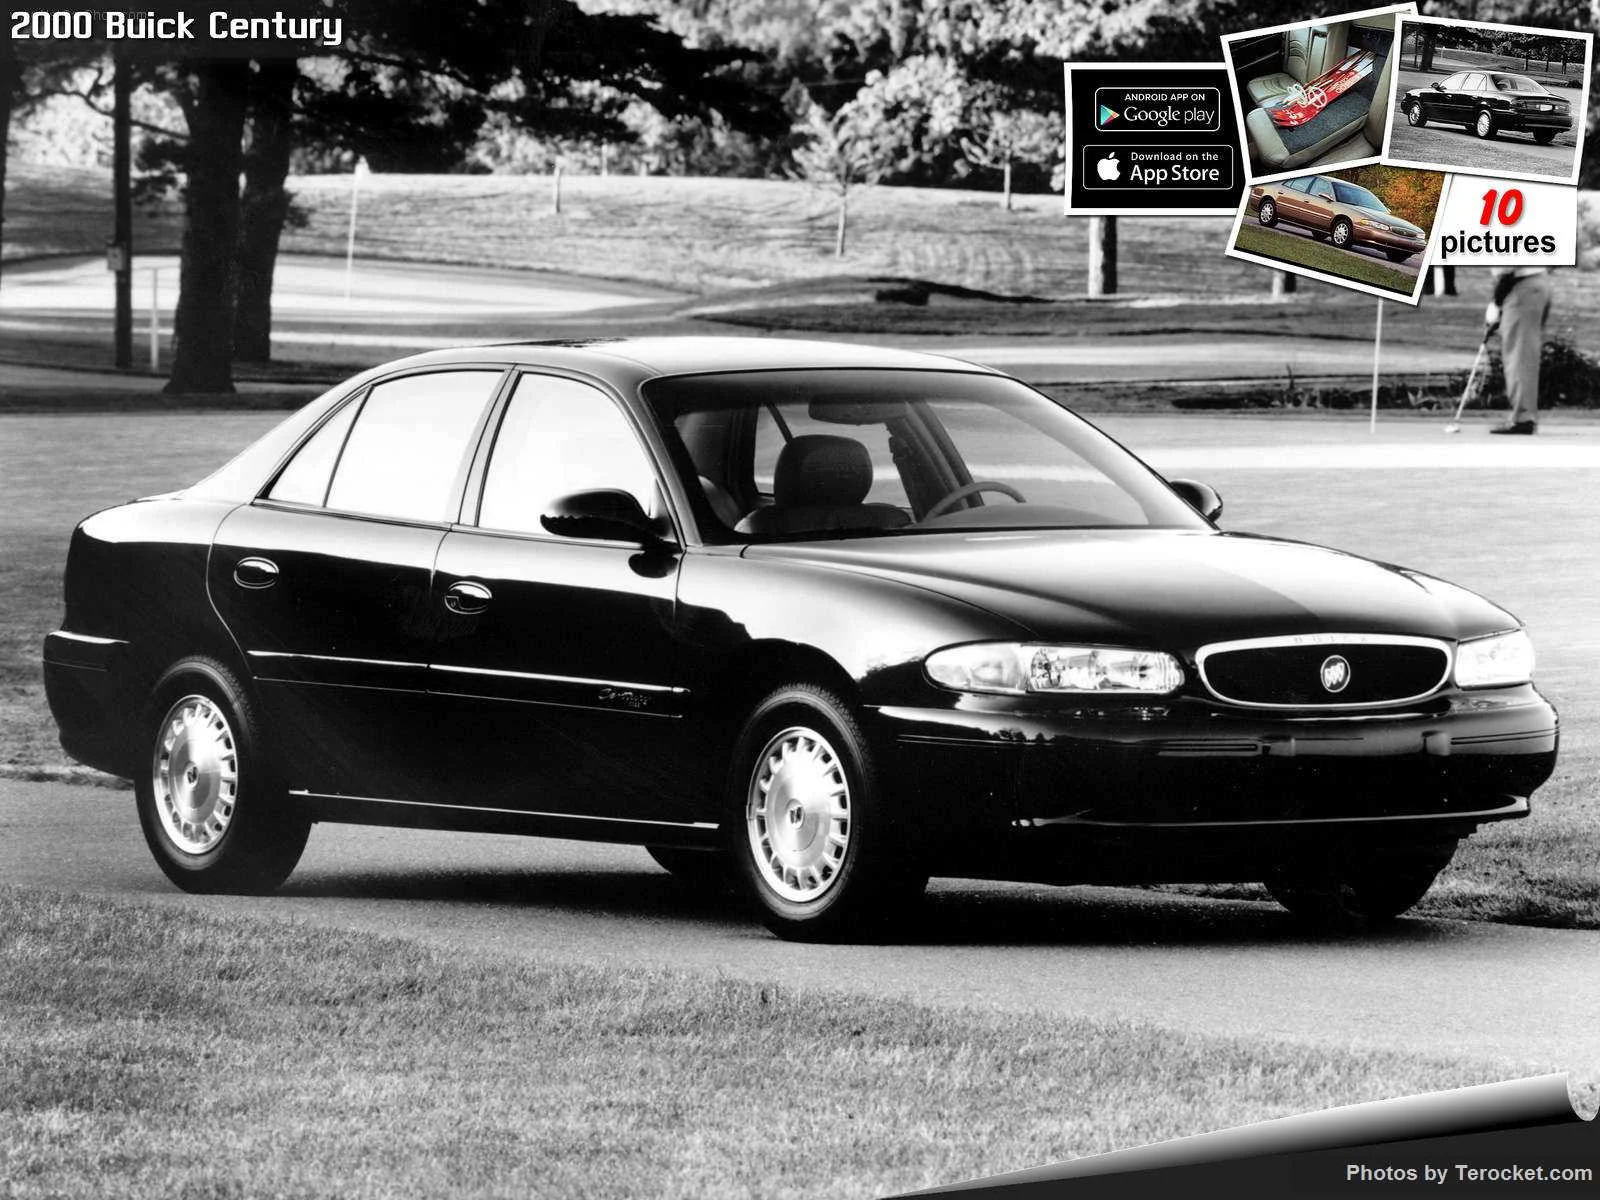 Hình ảnh xe ô tô Buick Century 2000 & nội ngoại thất